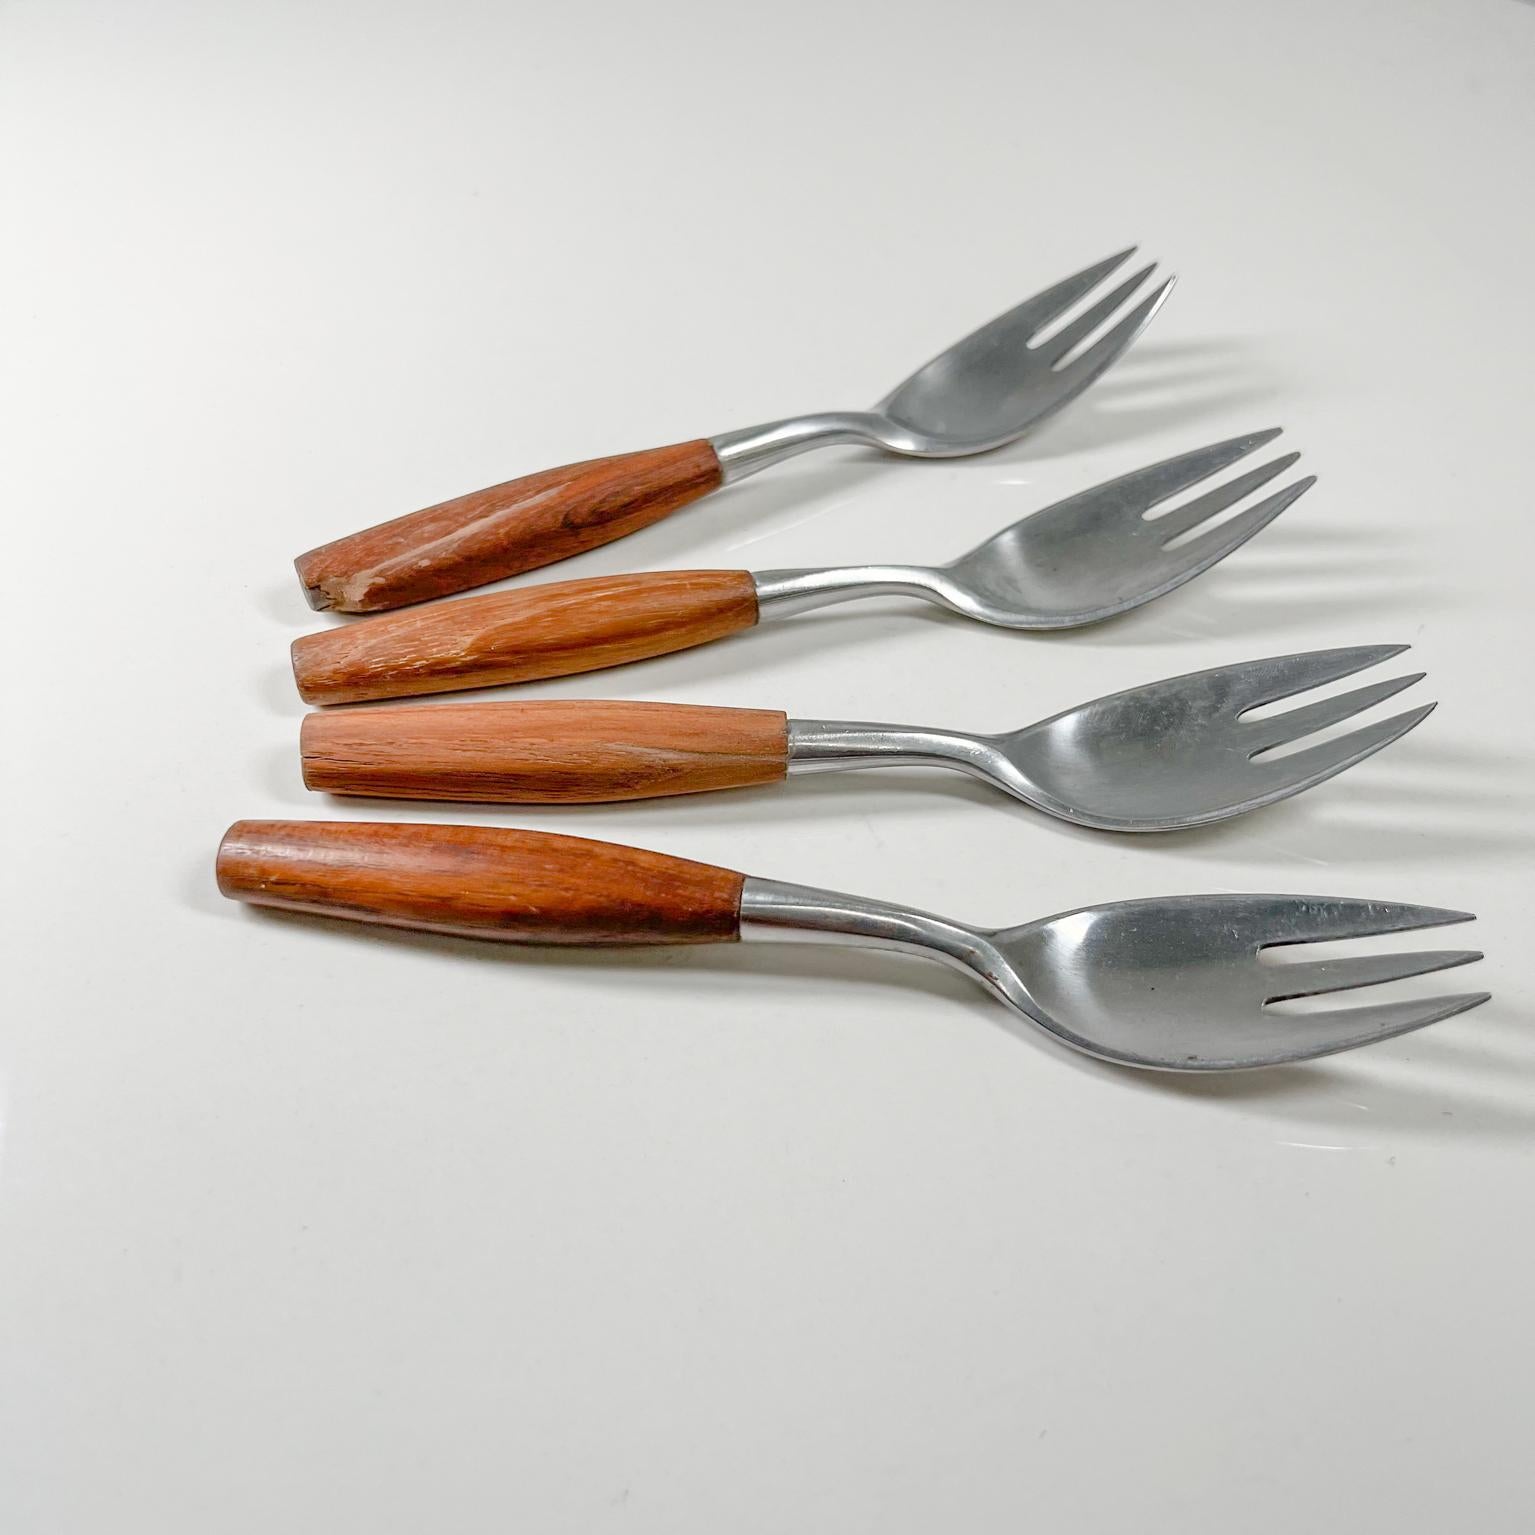 Fourchettes à salade Dansk Designs de 1954 en teck et acier inoxydable Jens Quistgaard 1